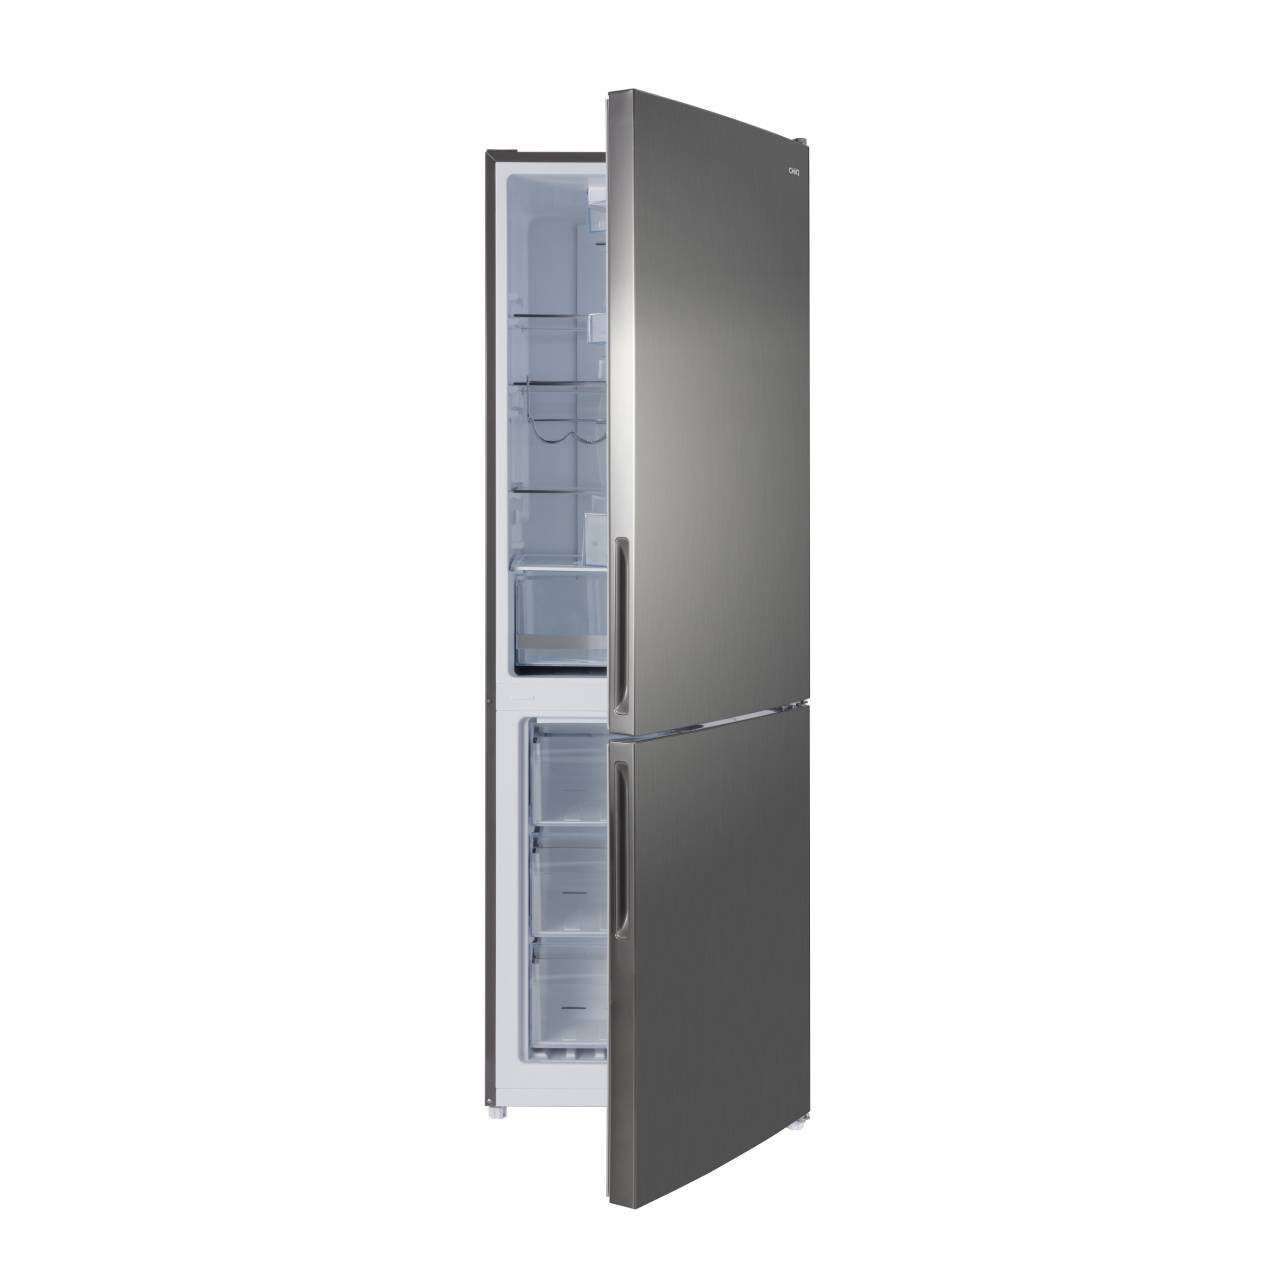 90949776 Отдельностоящий холодильник CBM317NS 64x193 см цвет серебристый STLM-0426982 CHIQ